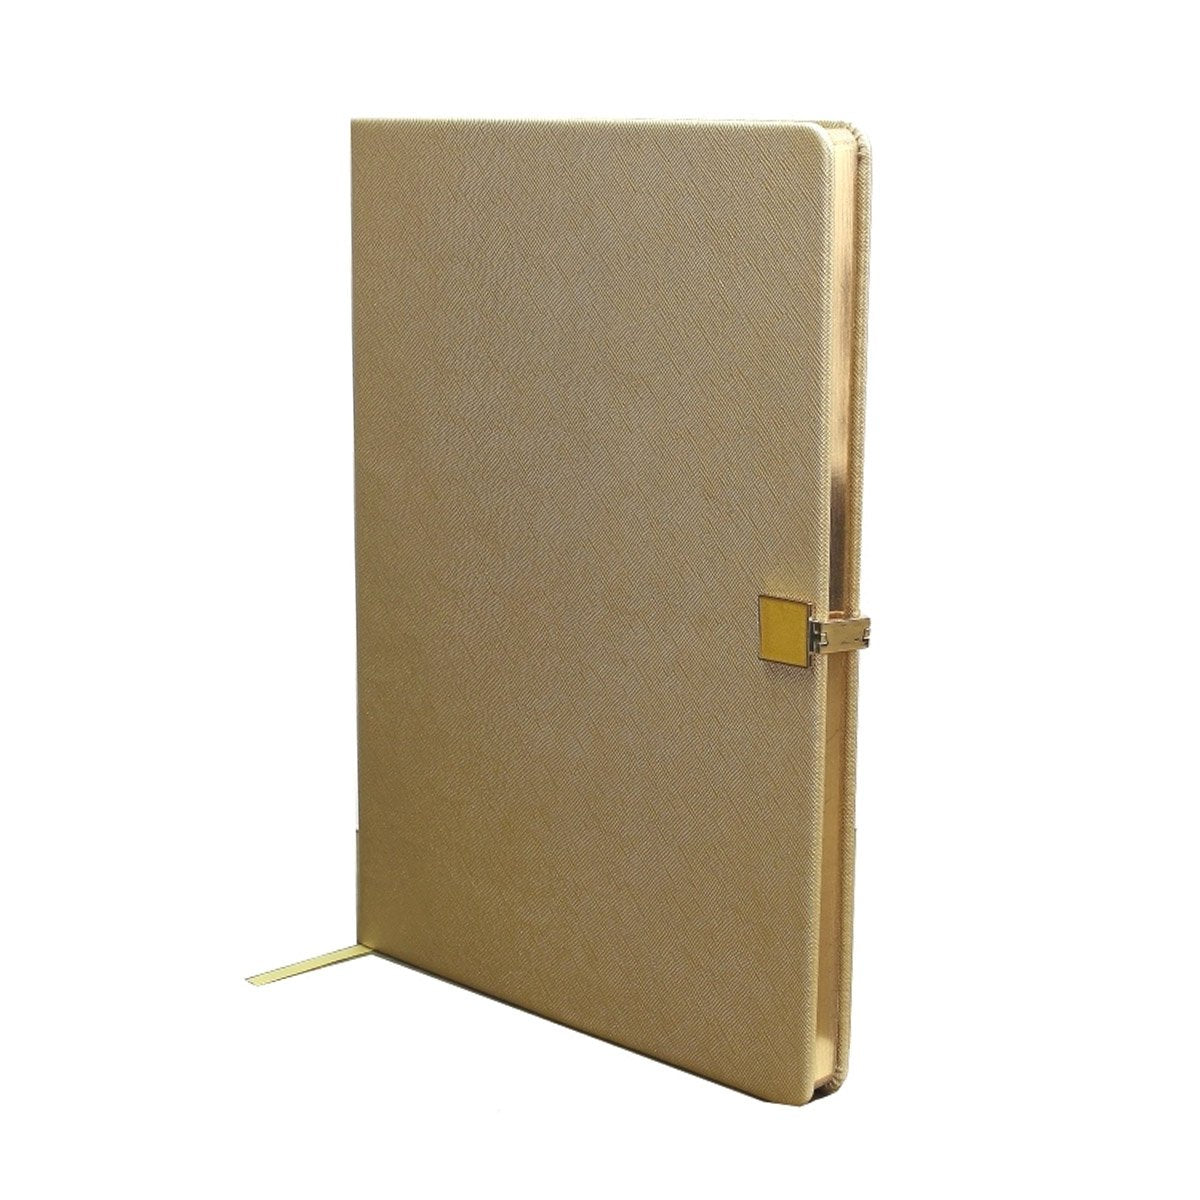 Gold & Gold A4 Notebook